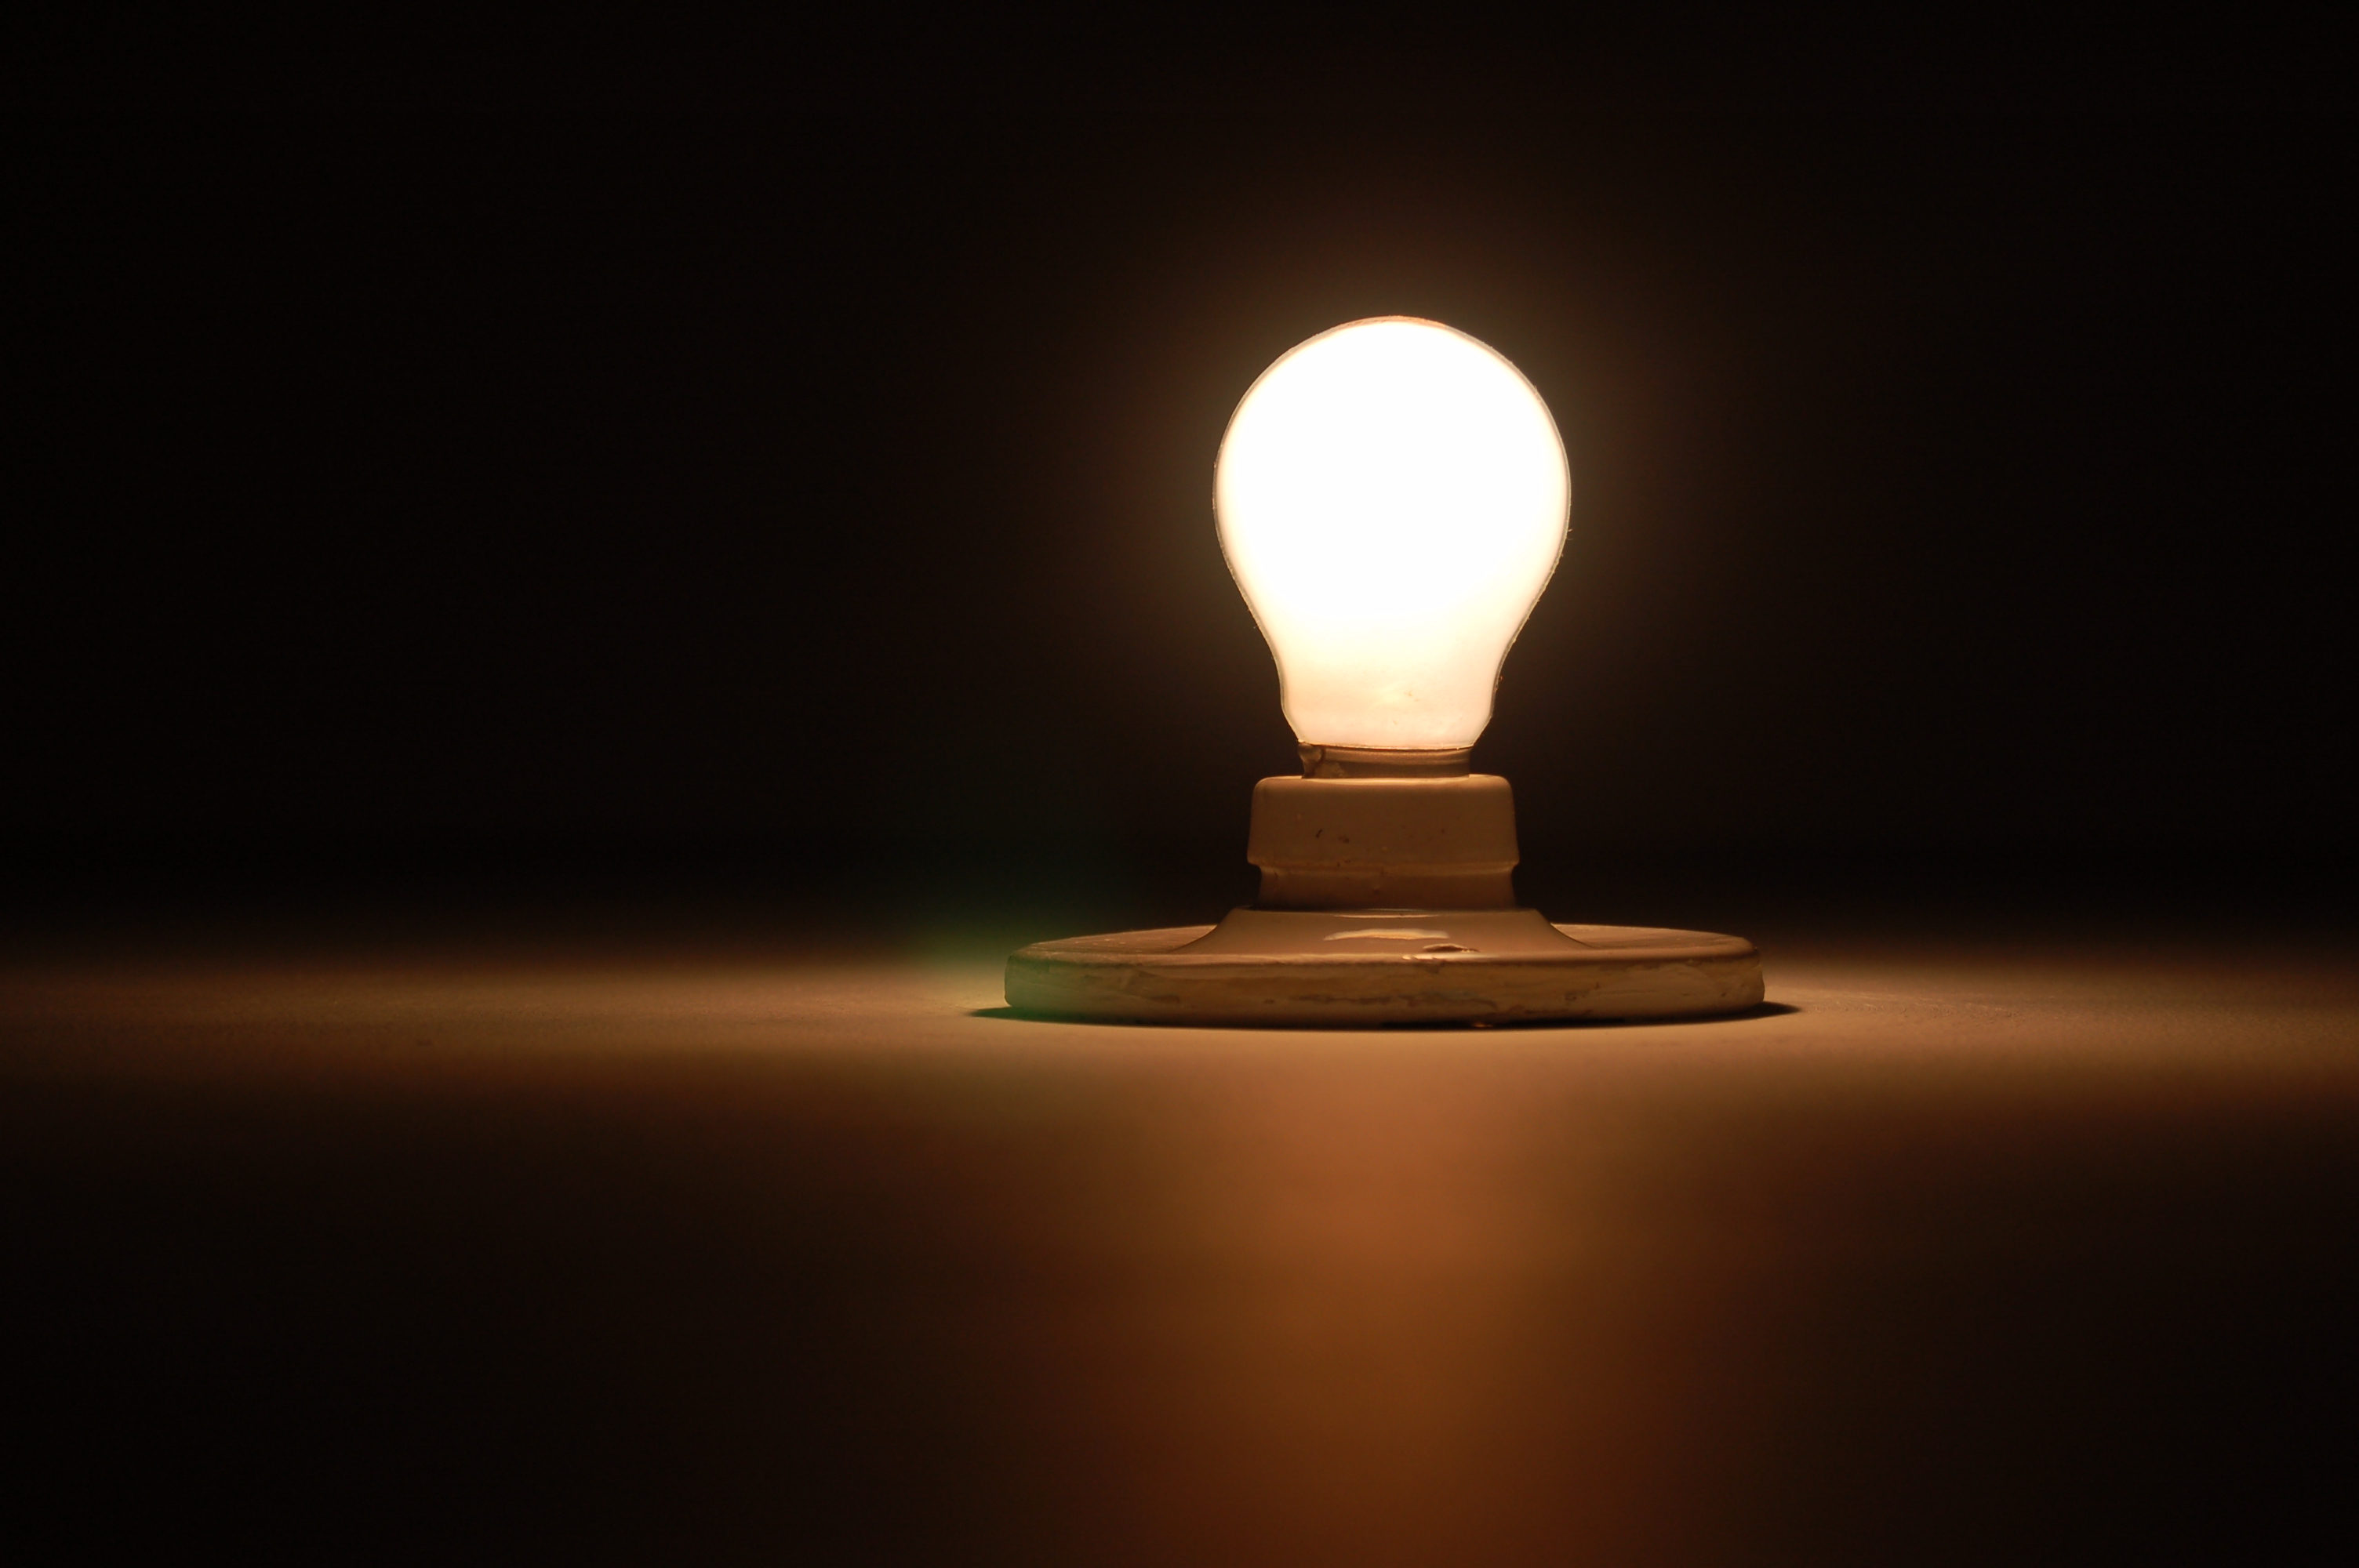 Shining lightbulb in a dark room